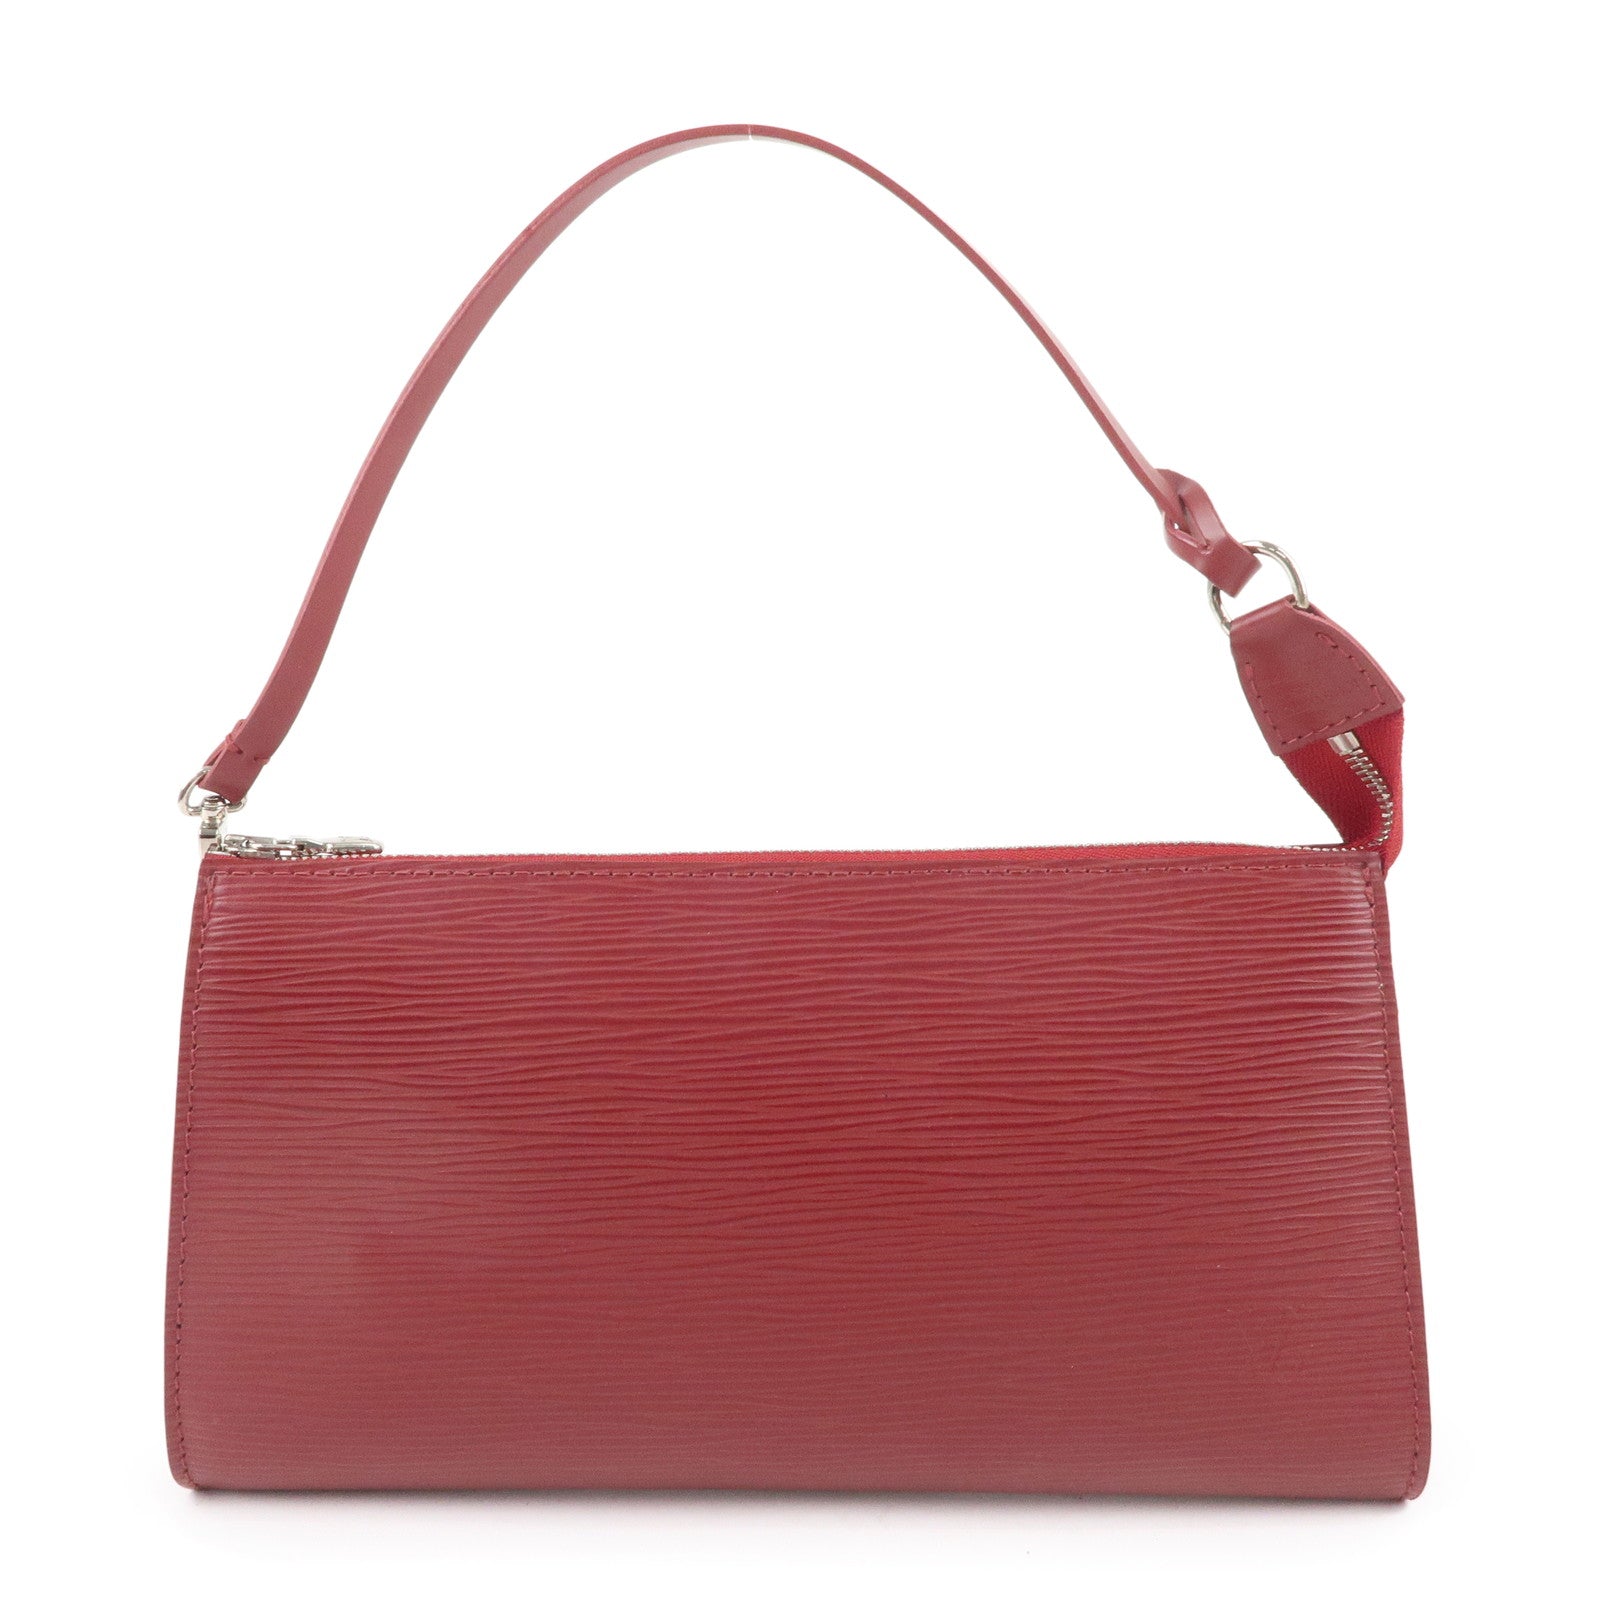 Loving my new to me LV Pochette! : r/handbags